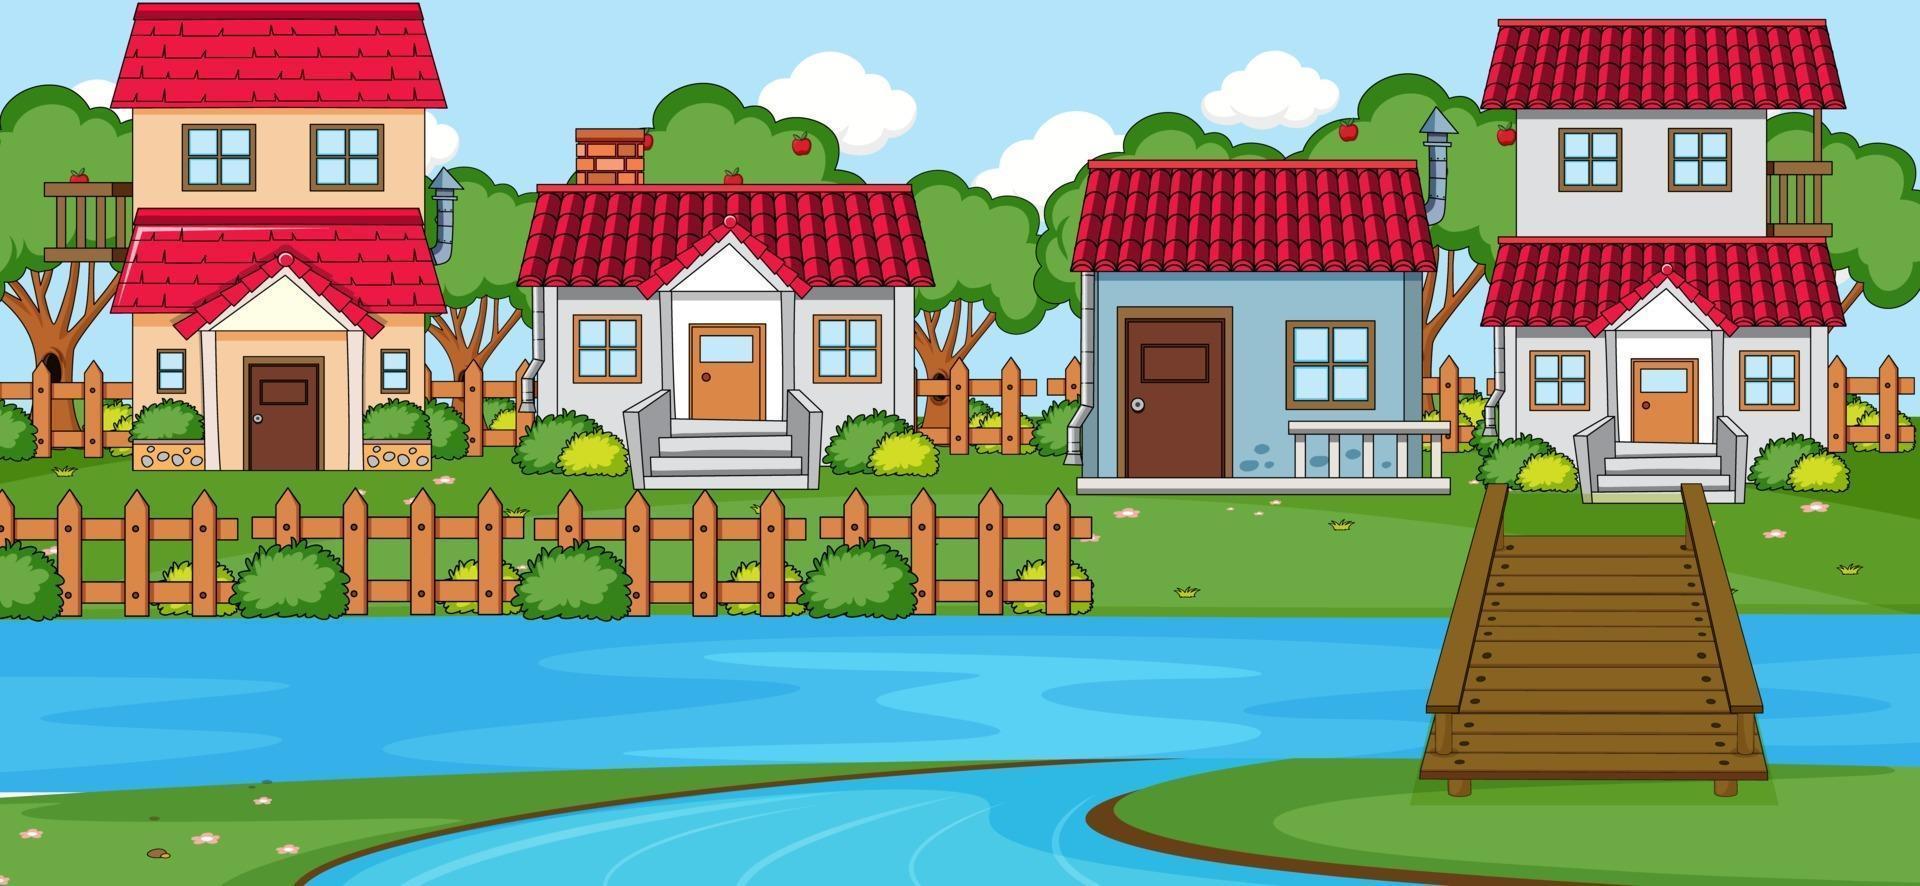 cena horizontal com muitas casas e rio vetor